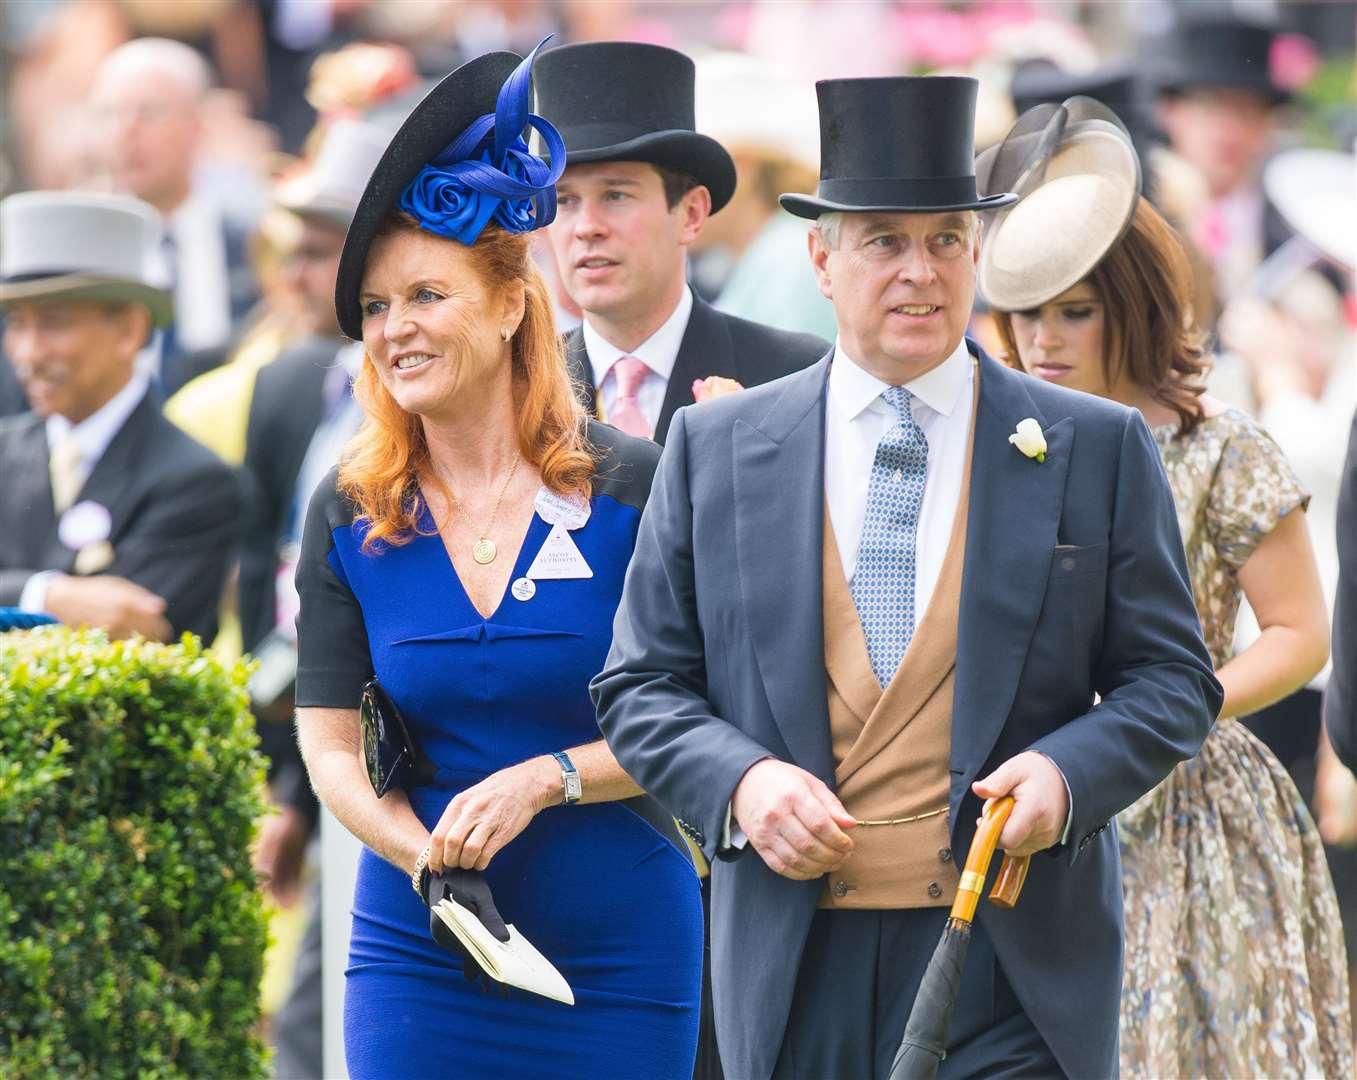 Sarah and the Duke of York at Royal Ascot in 2015 (Dominic Lipinski/PA)